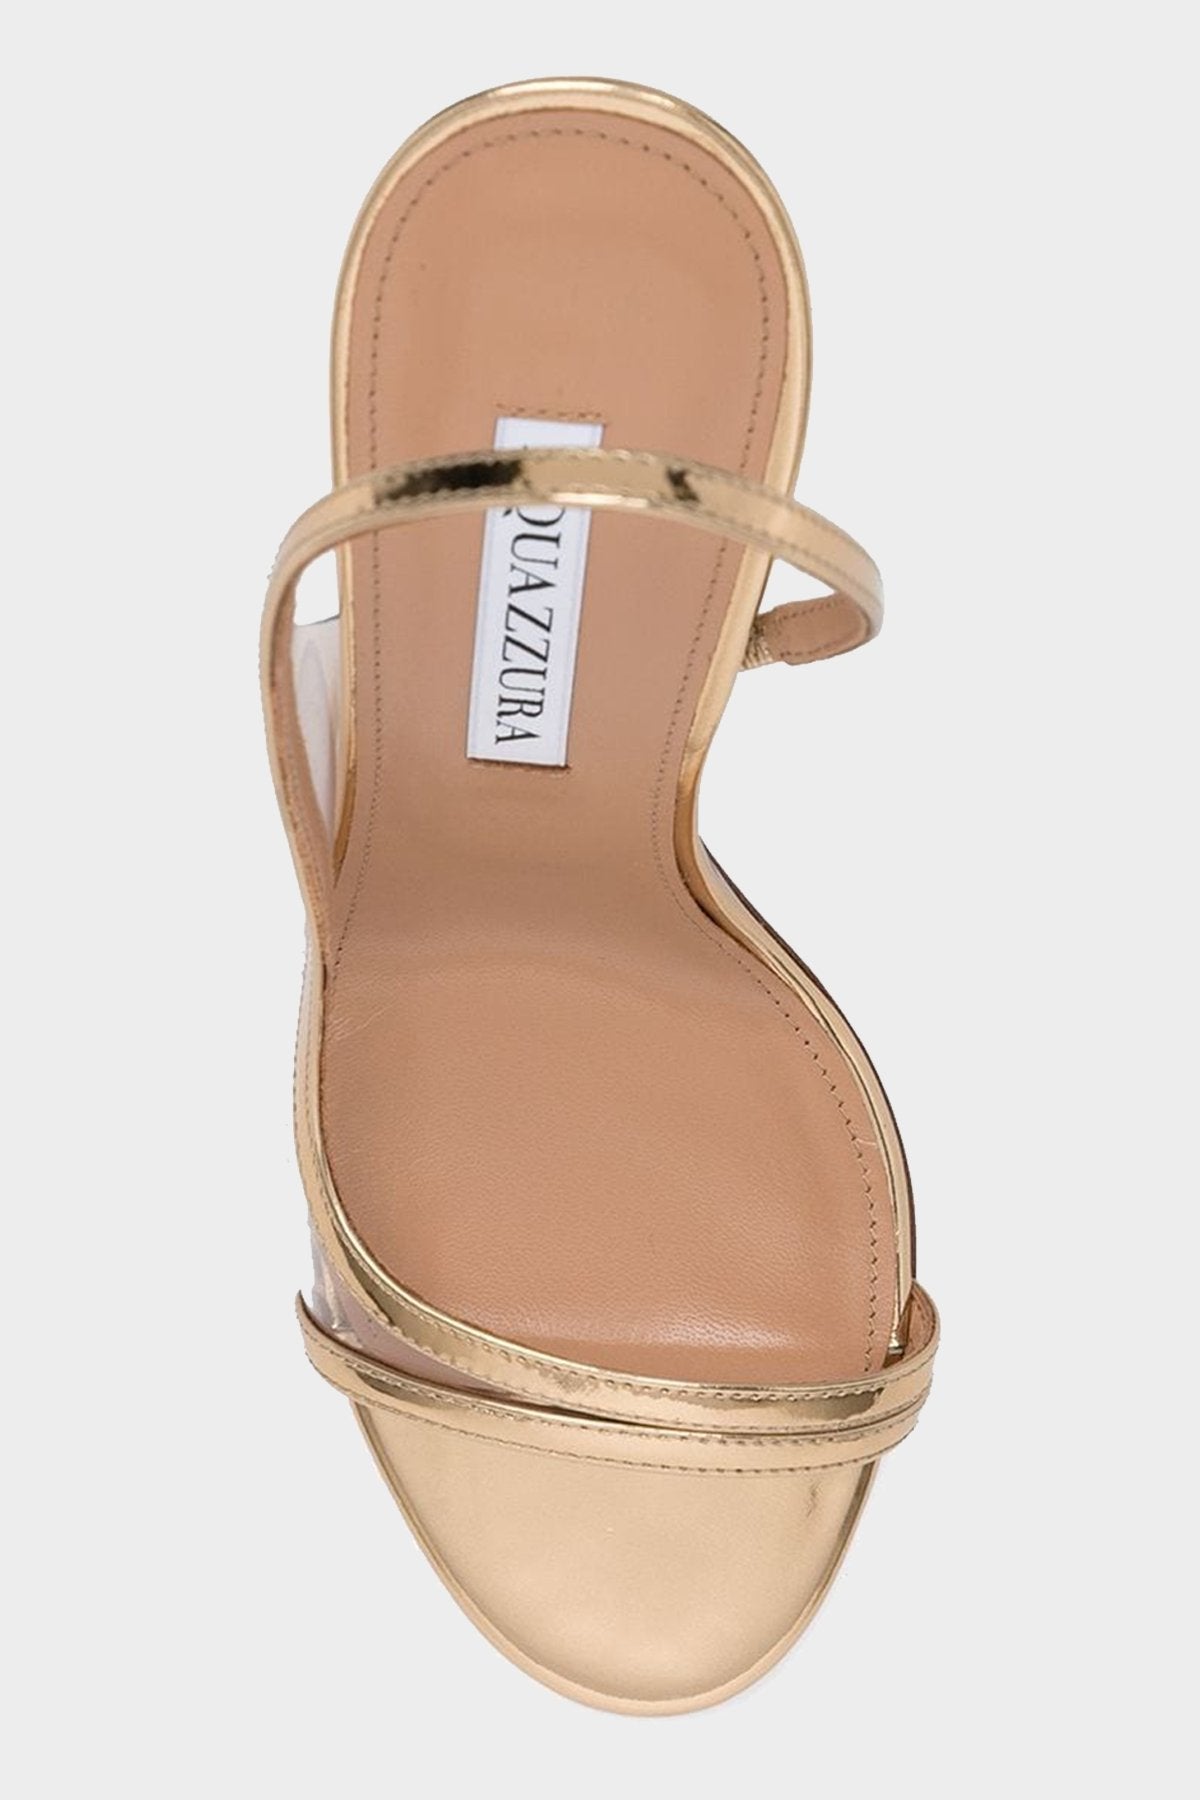 Nude Sandal 105 in Gold - shop-olivia.com